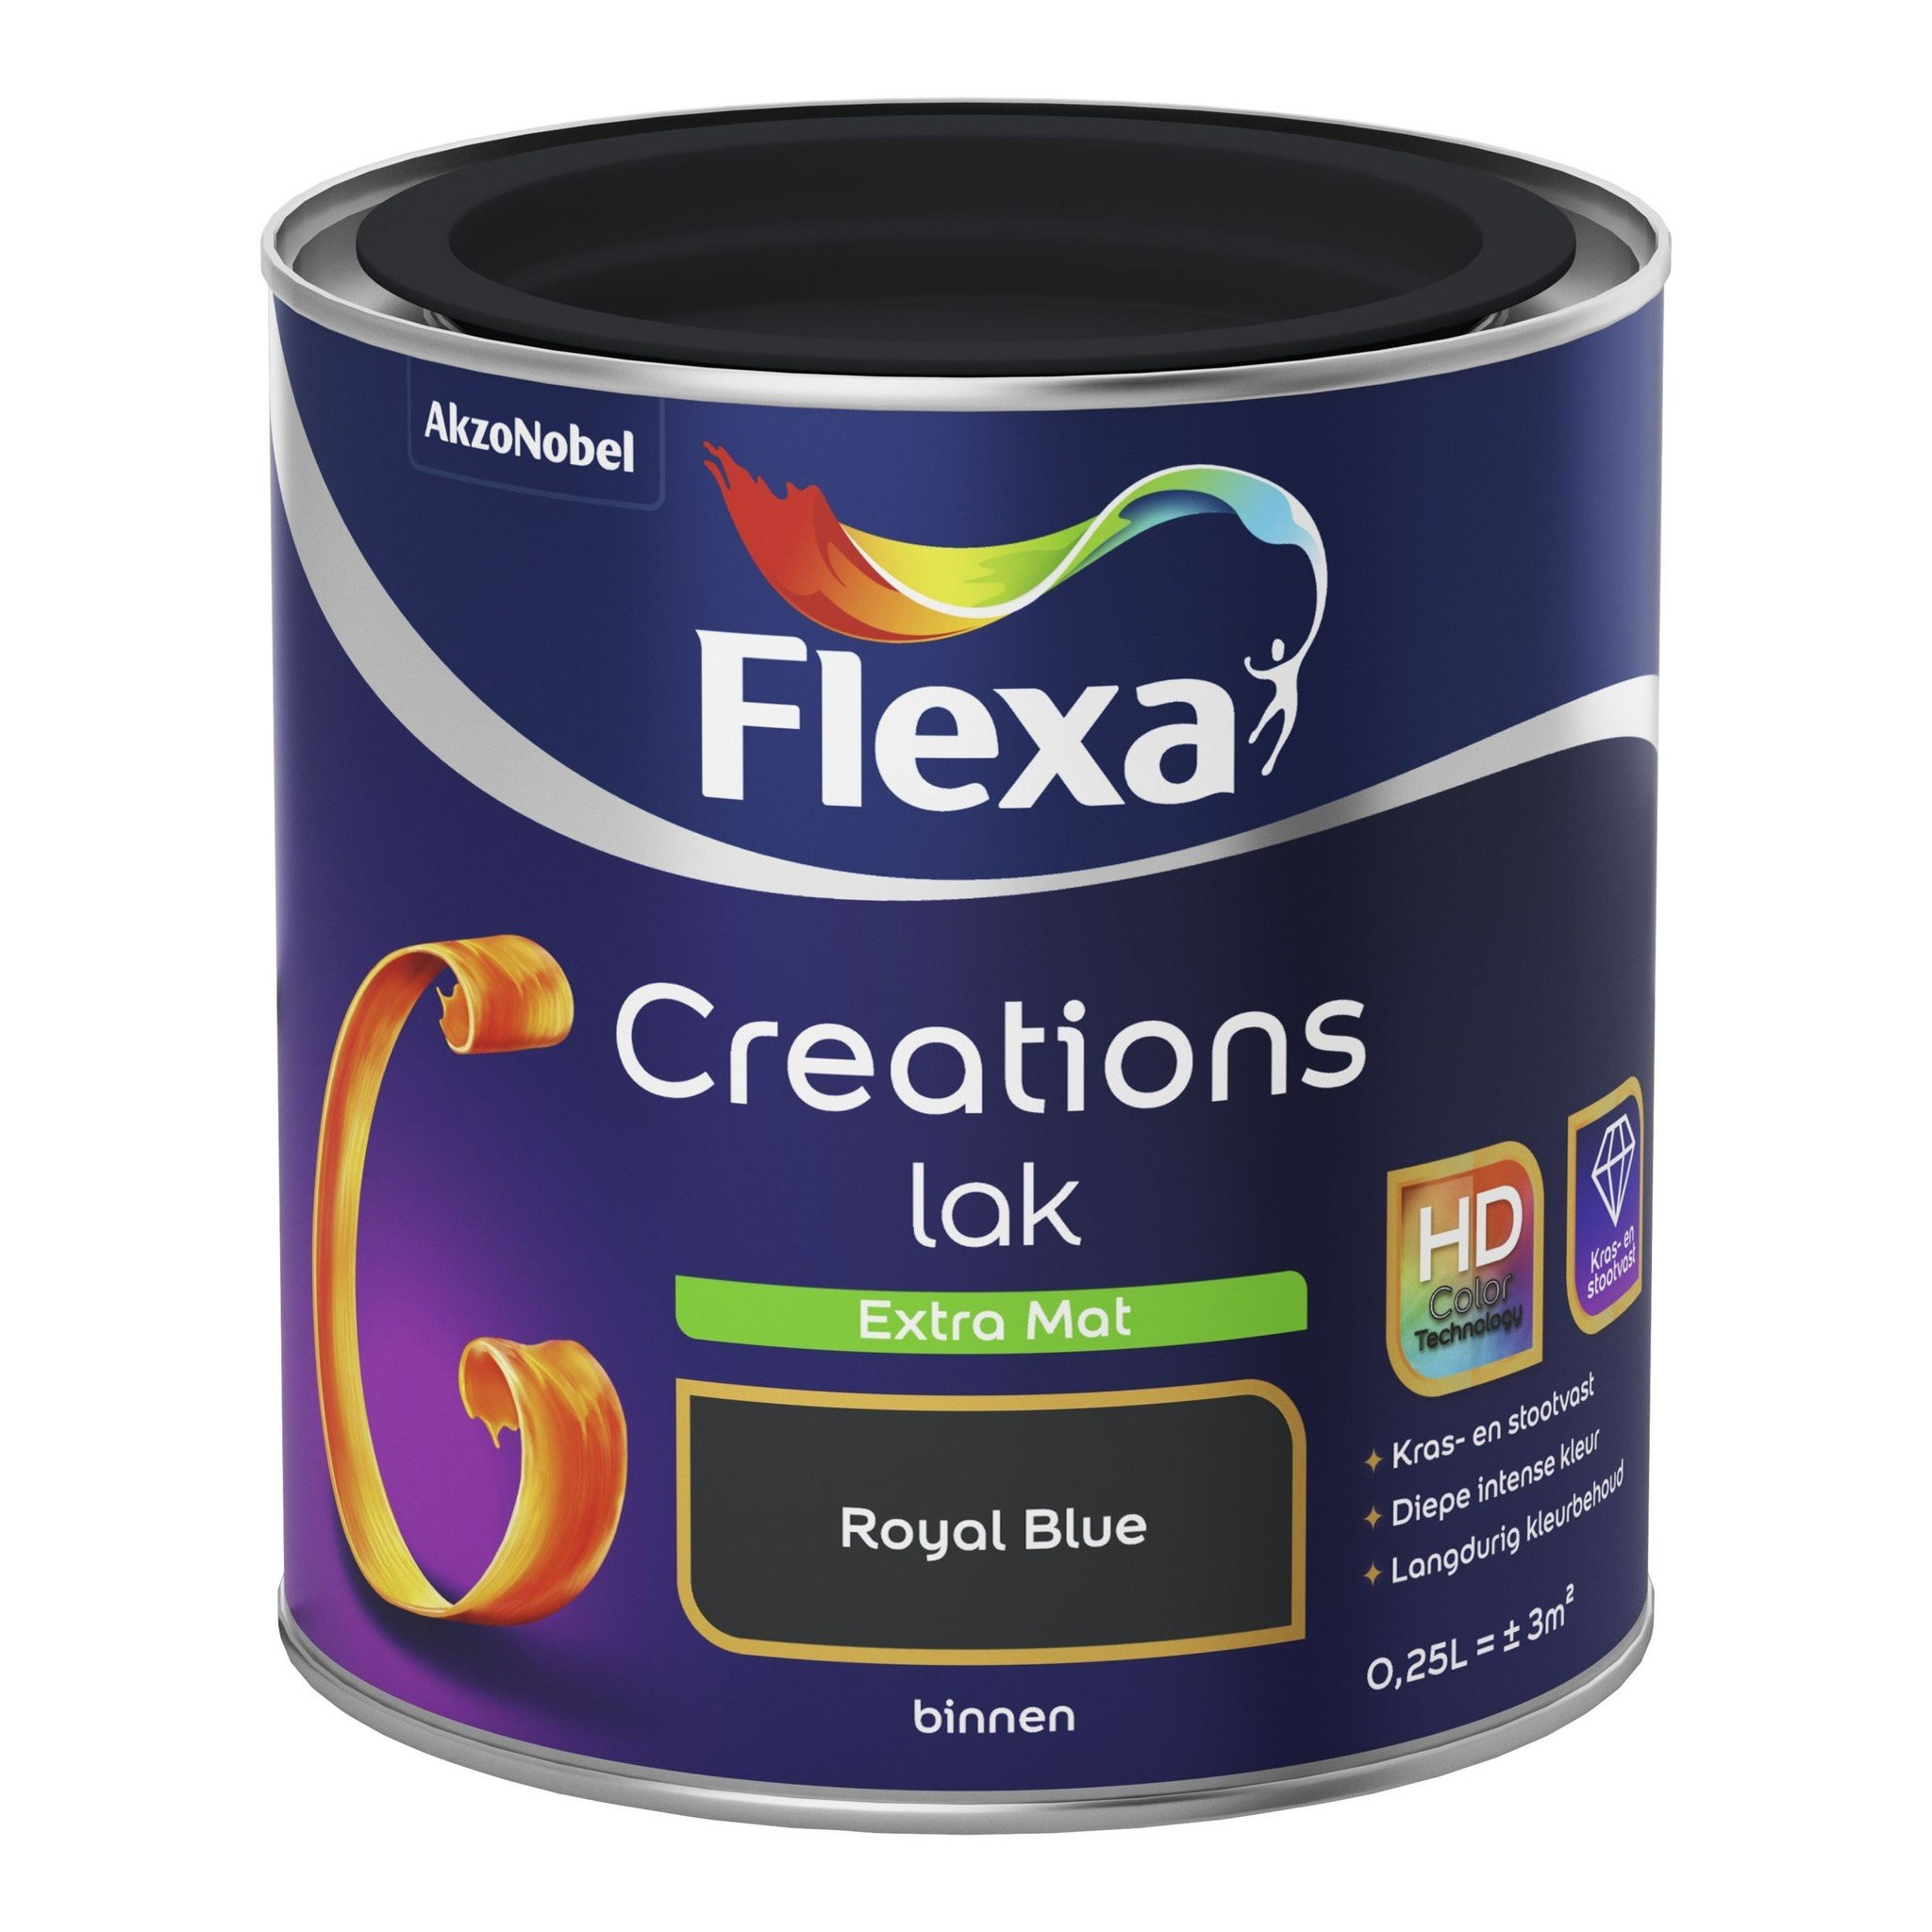 Flexa Creations Lak Extra Mat - Royal Blue